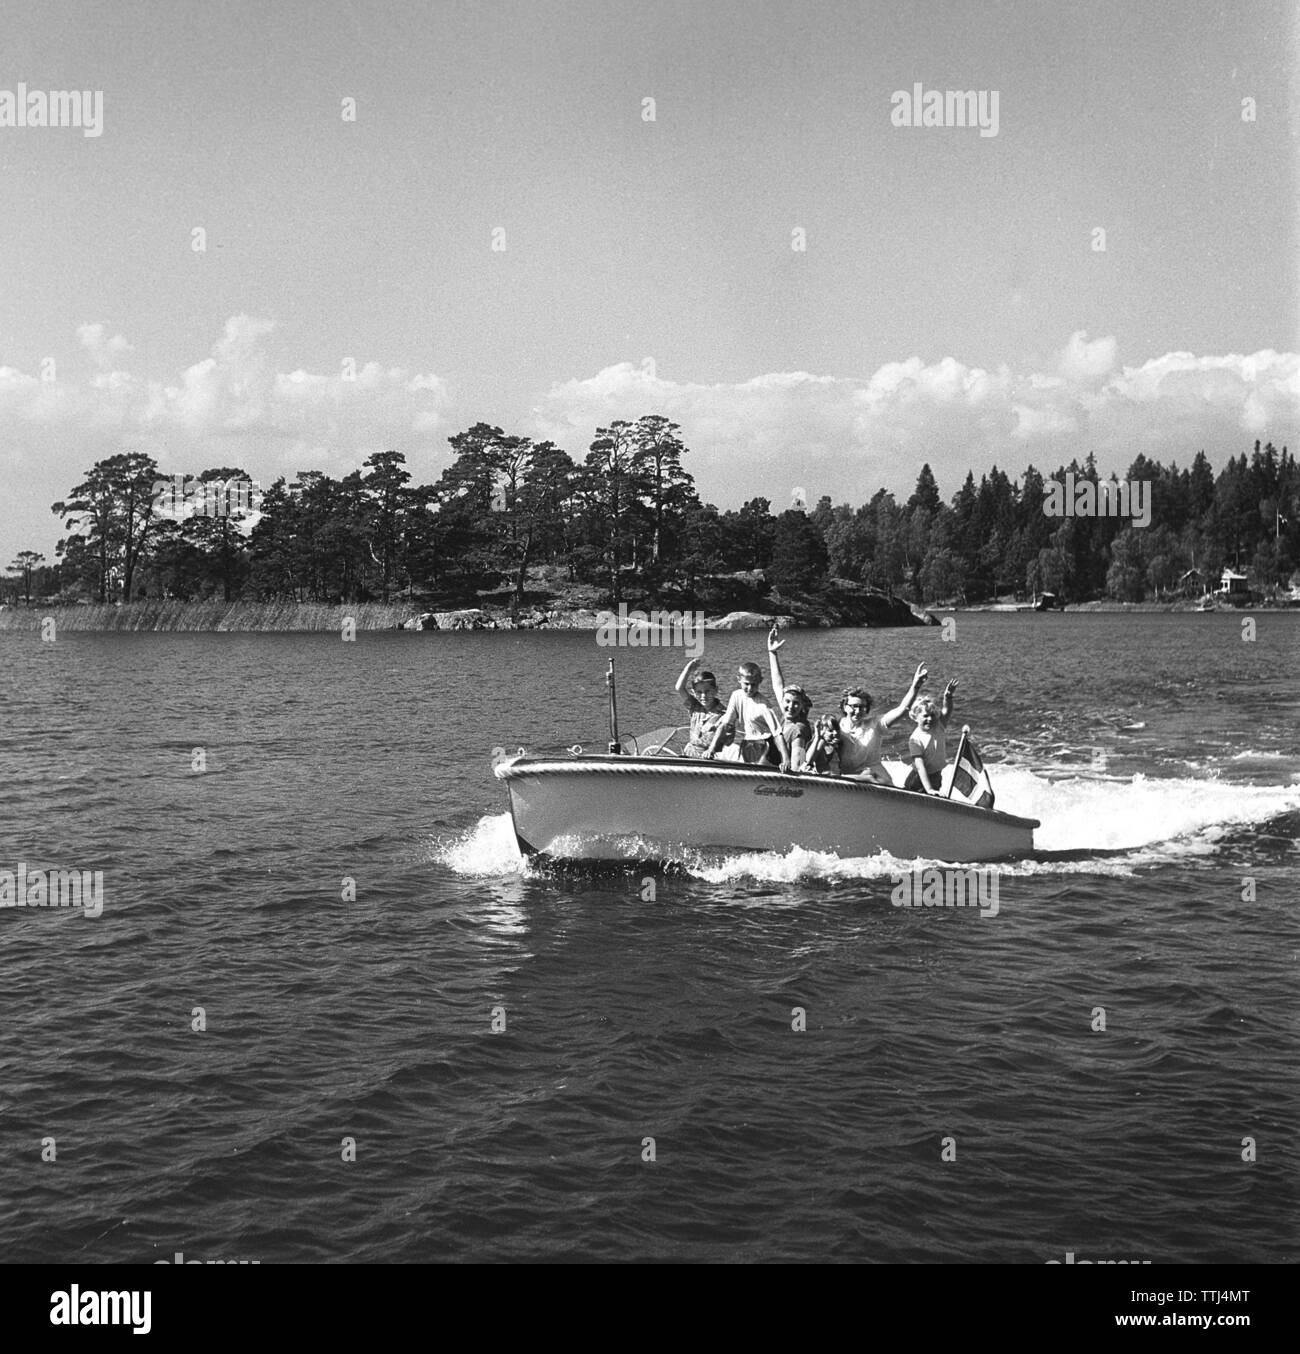 1950 Sommer. Eine Familie geht der Fotograf in ihren kleinen Motorboot und Wellen glücklich. Schweden 1951 Kristoffersson ref BD 57-3. Stockfoto